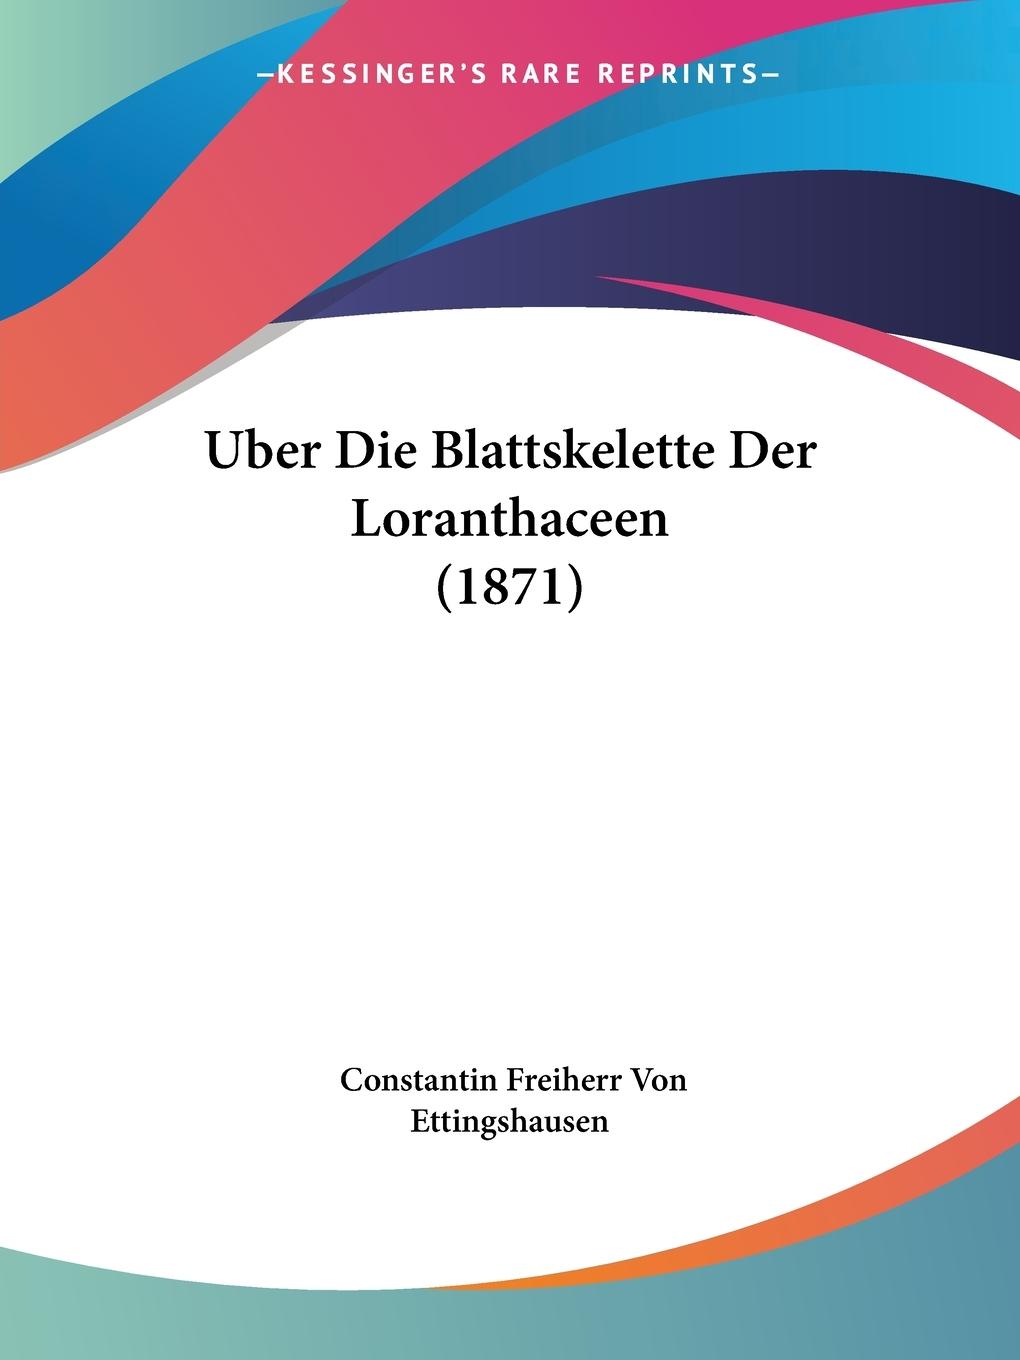 Uber Die Blattskelette Der Loranthaceen (1871) - Ettingshausen, Constantin Freiherr Von